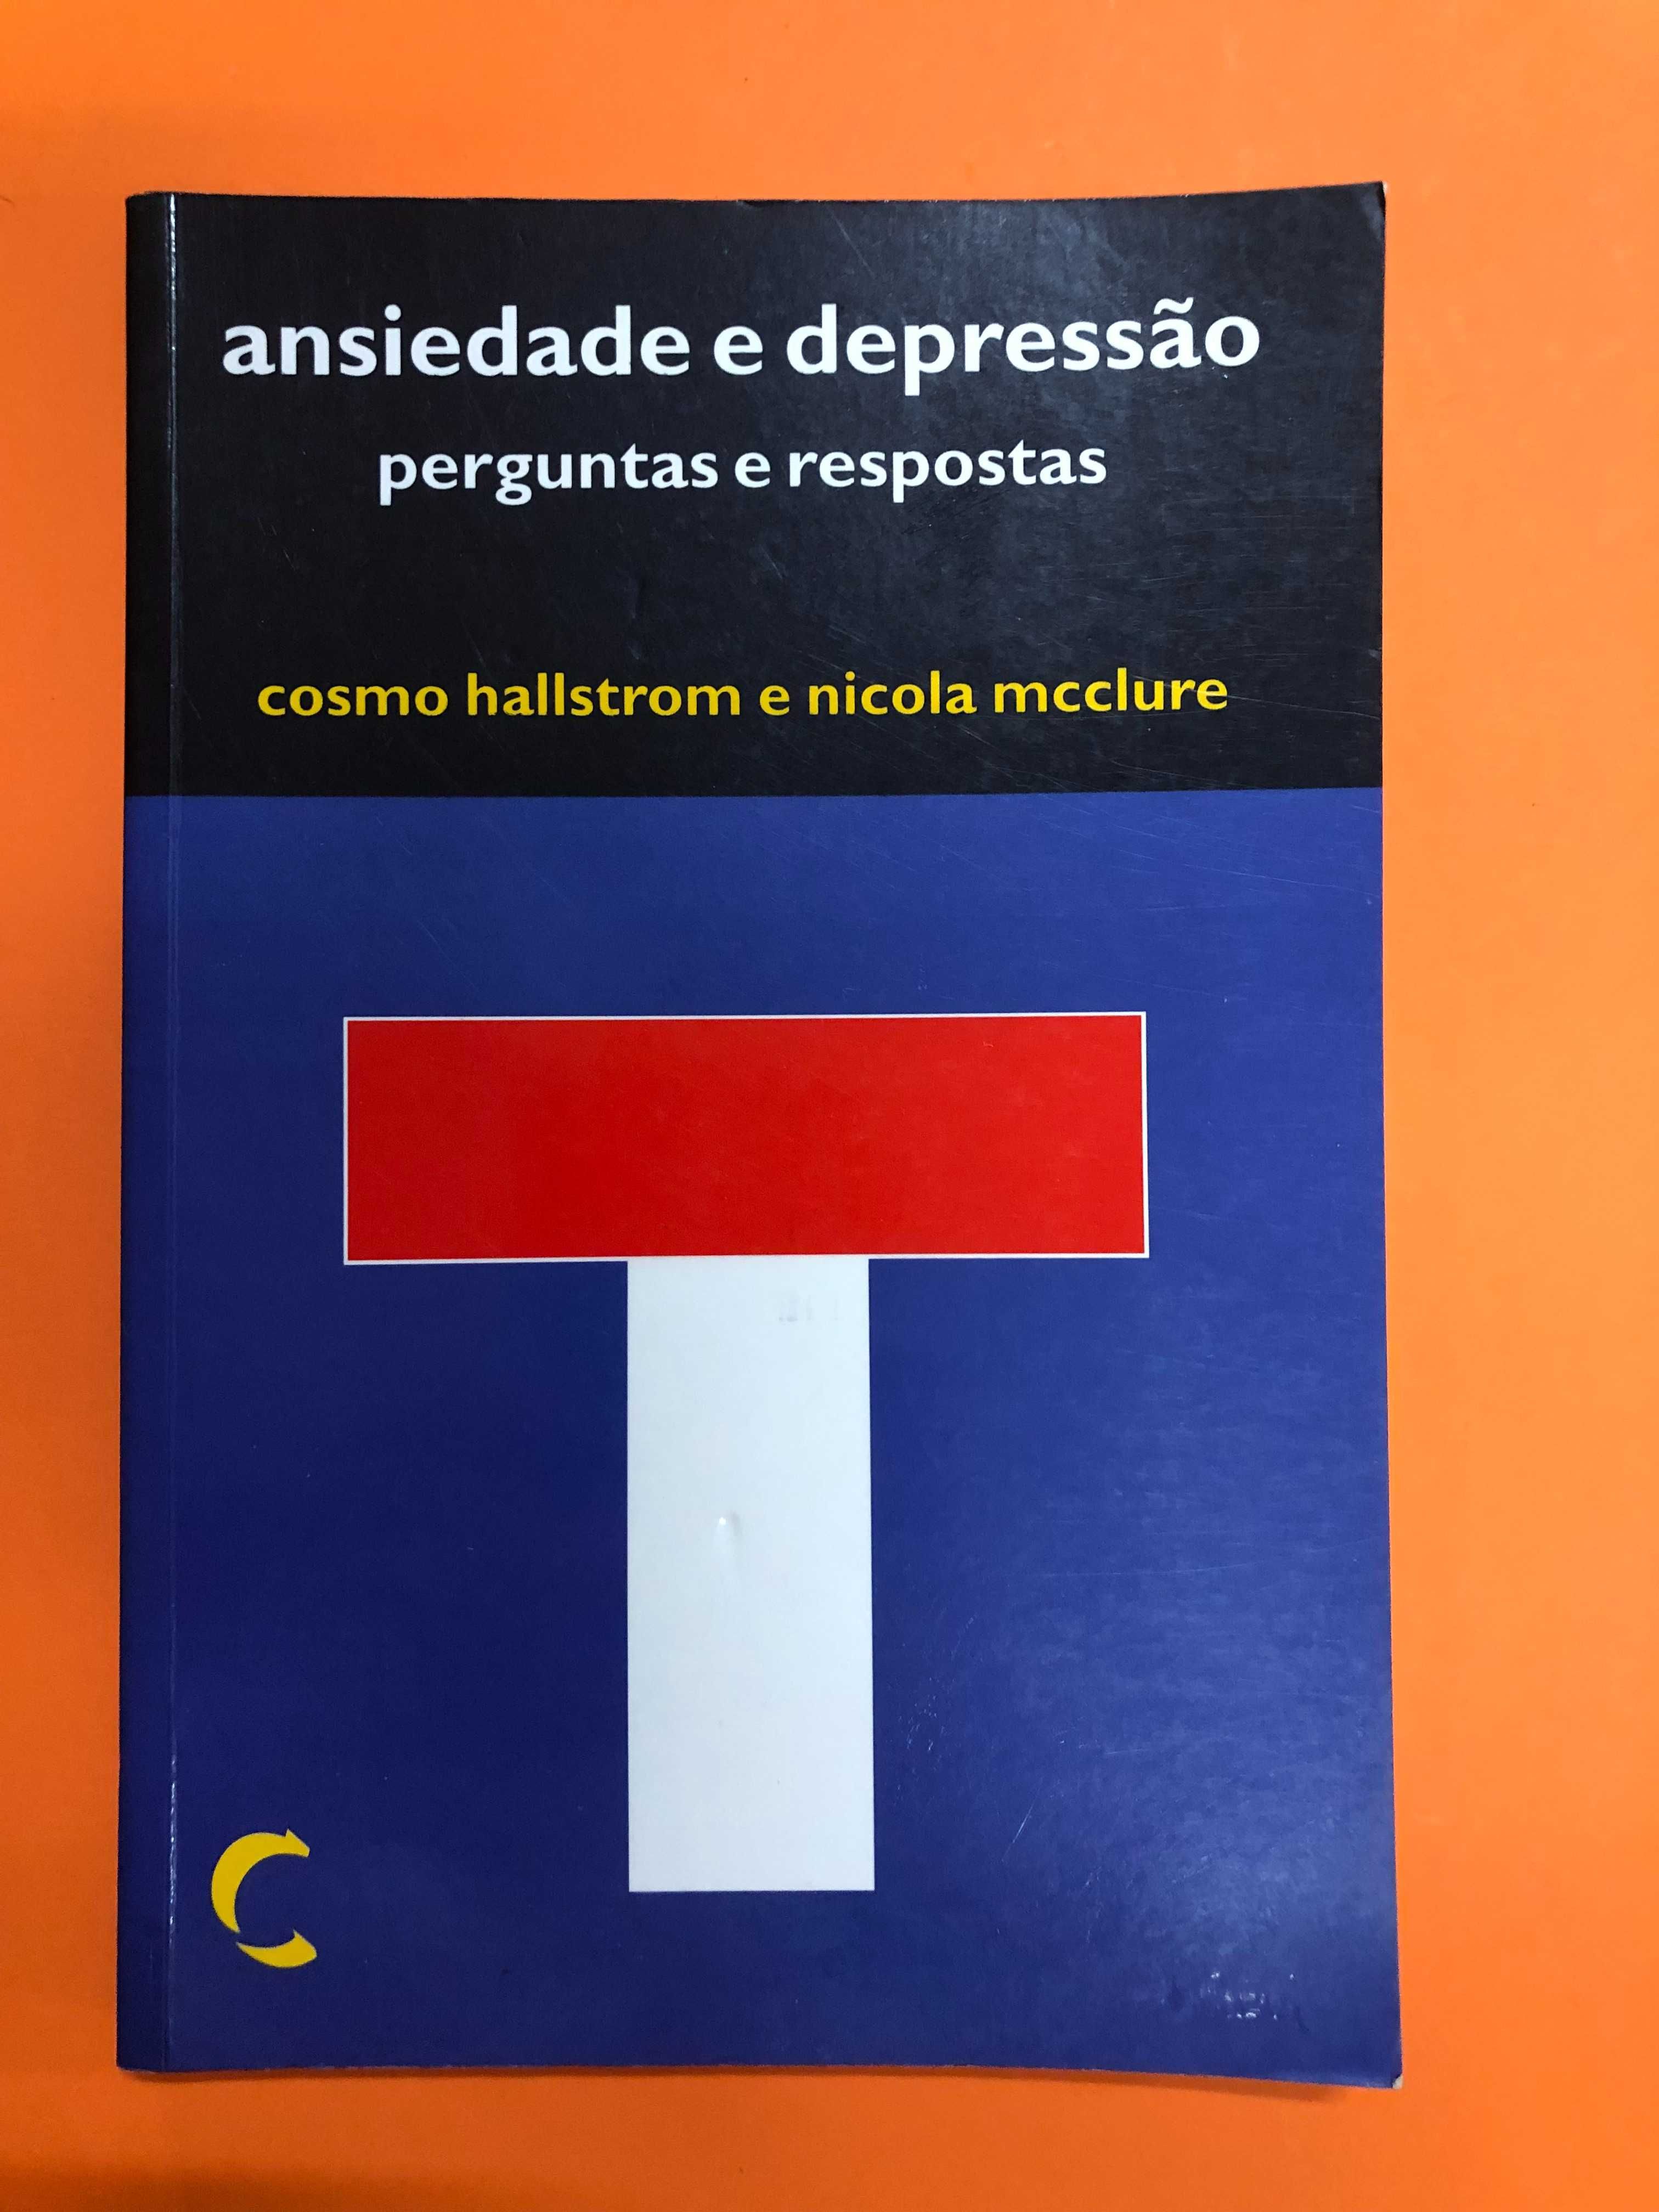 Ansiedade e depressão - Cosmo Hallstrom e Nicola Mcclure